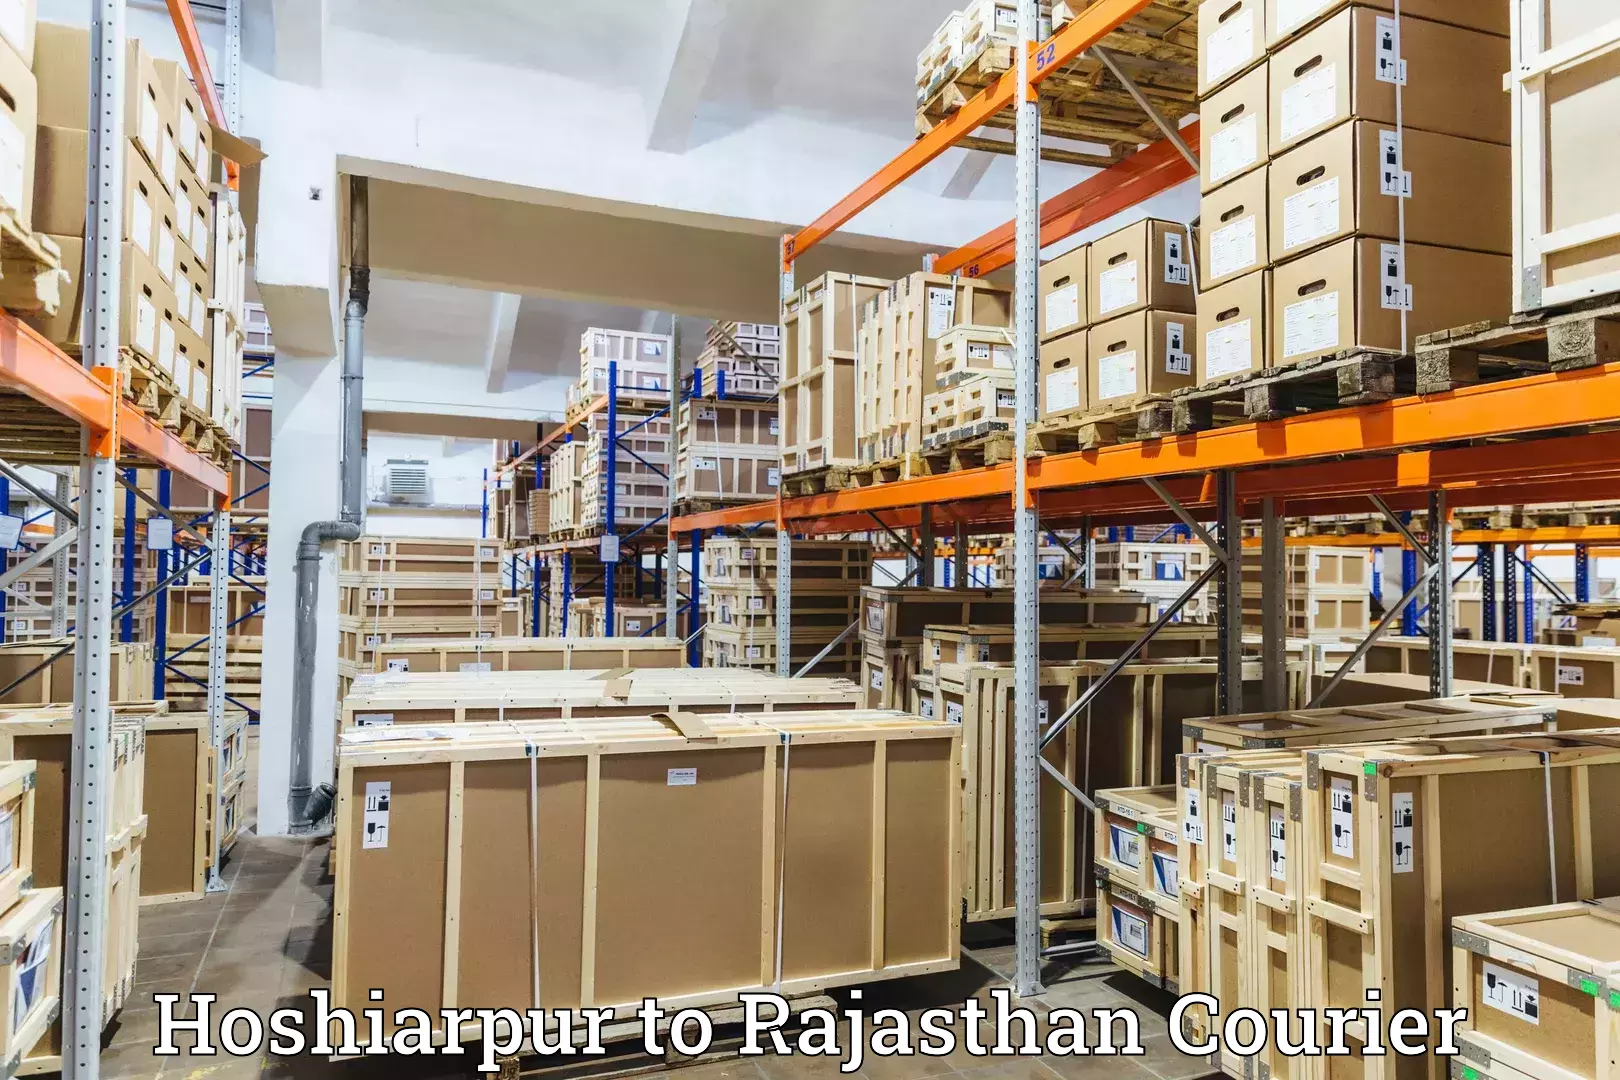 Advanced shipping network Hoshiarpur to Rajasthan